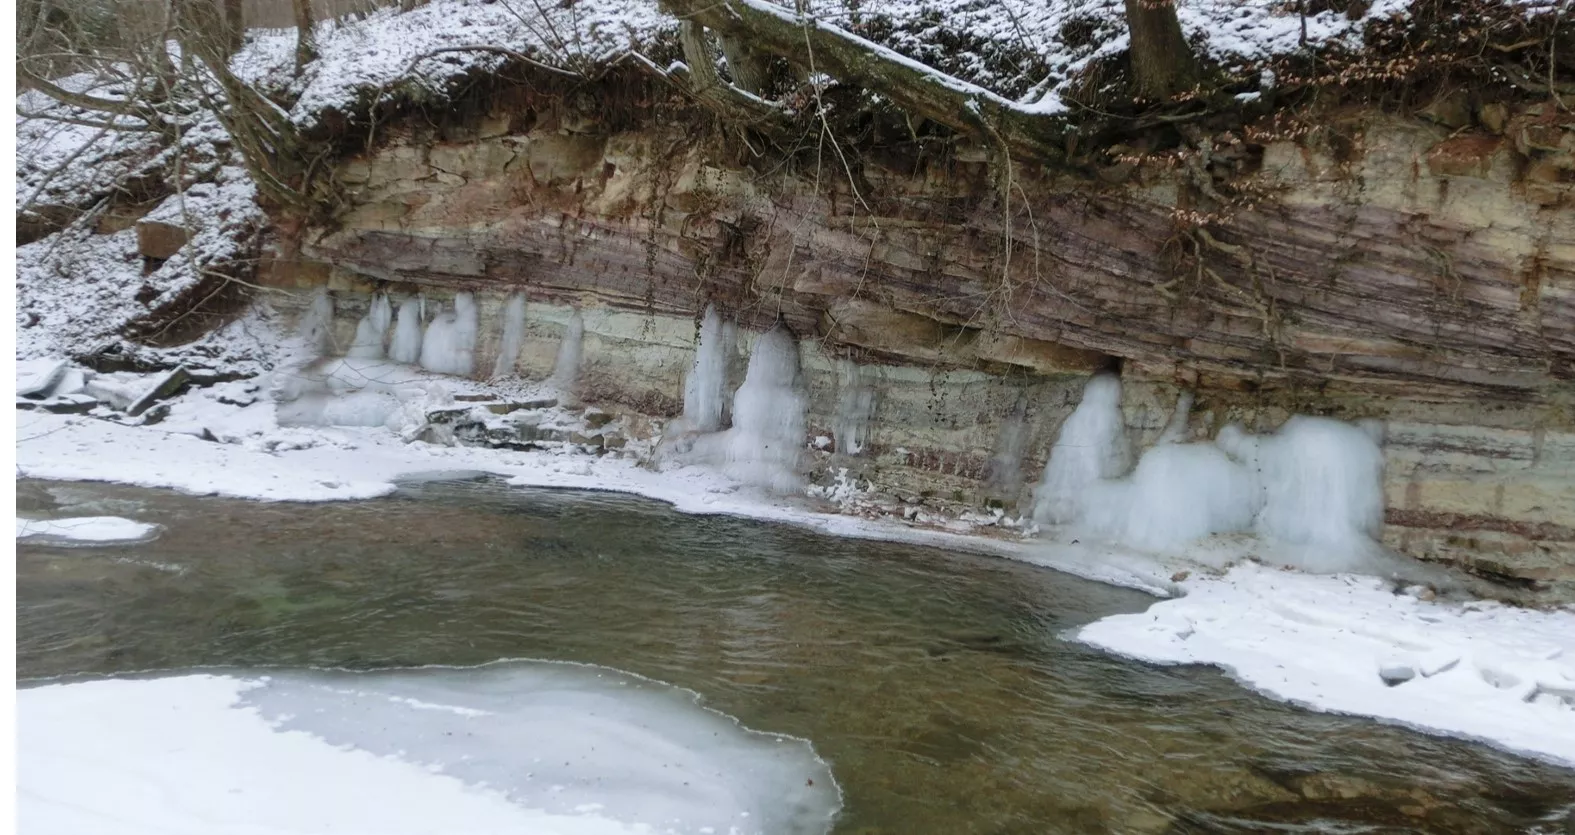 Fluss in einer winterlich eingeschneiten Umgebung. Das Ufer bildet eine Felswand. Aus einer waagerechten Spalte dringt zu Eis gefrorenes Wasser.